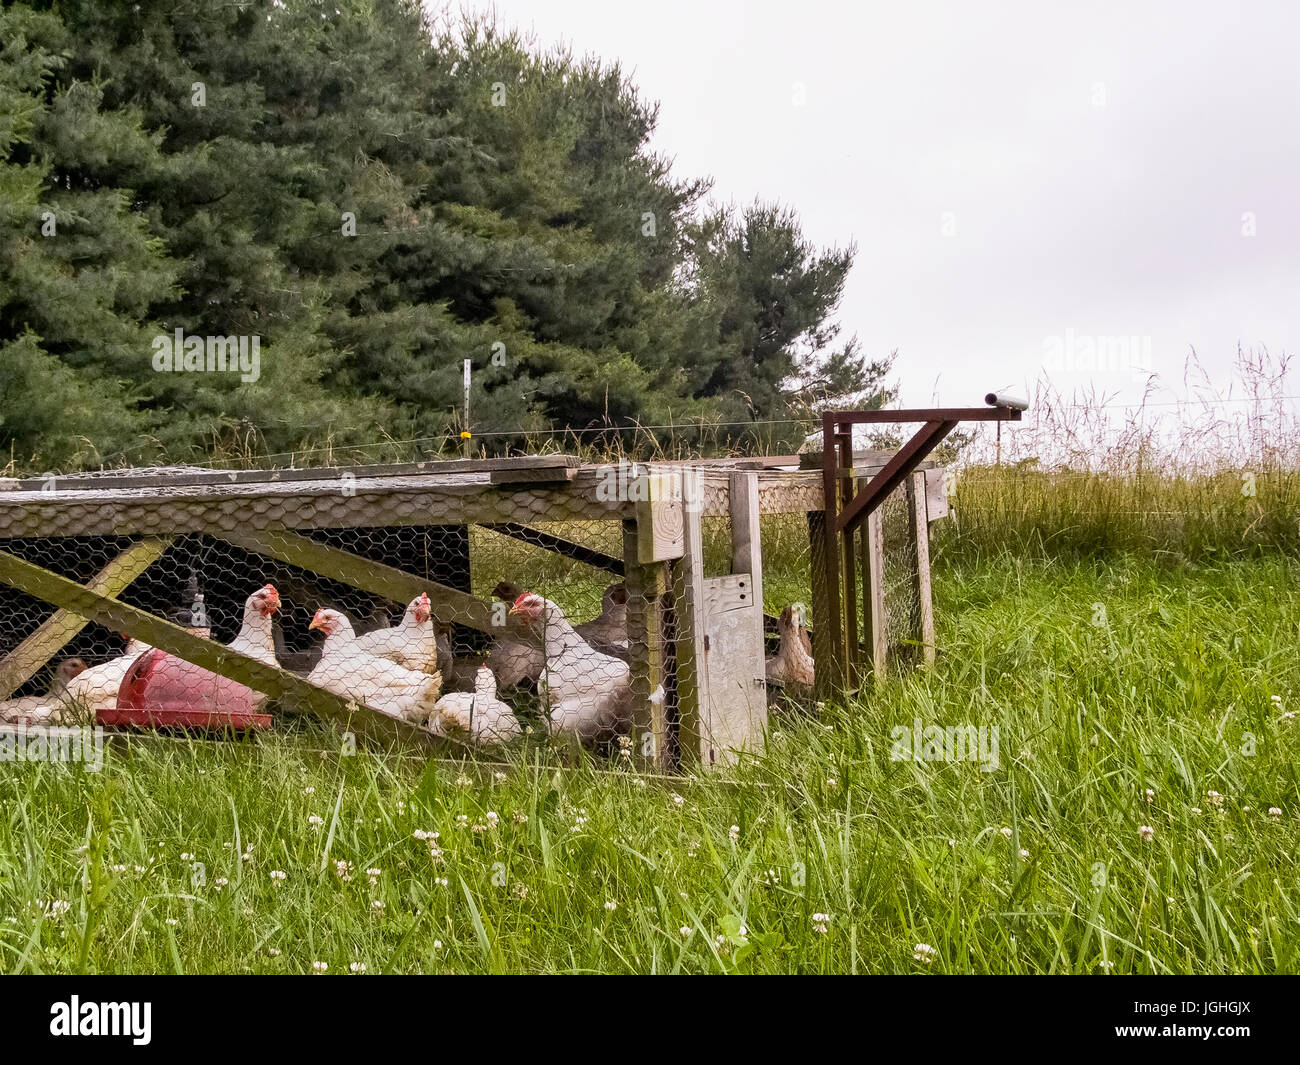 Las gallinas en el gallinero, rotación de pastoreo Foto de stock